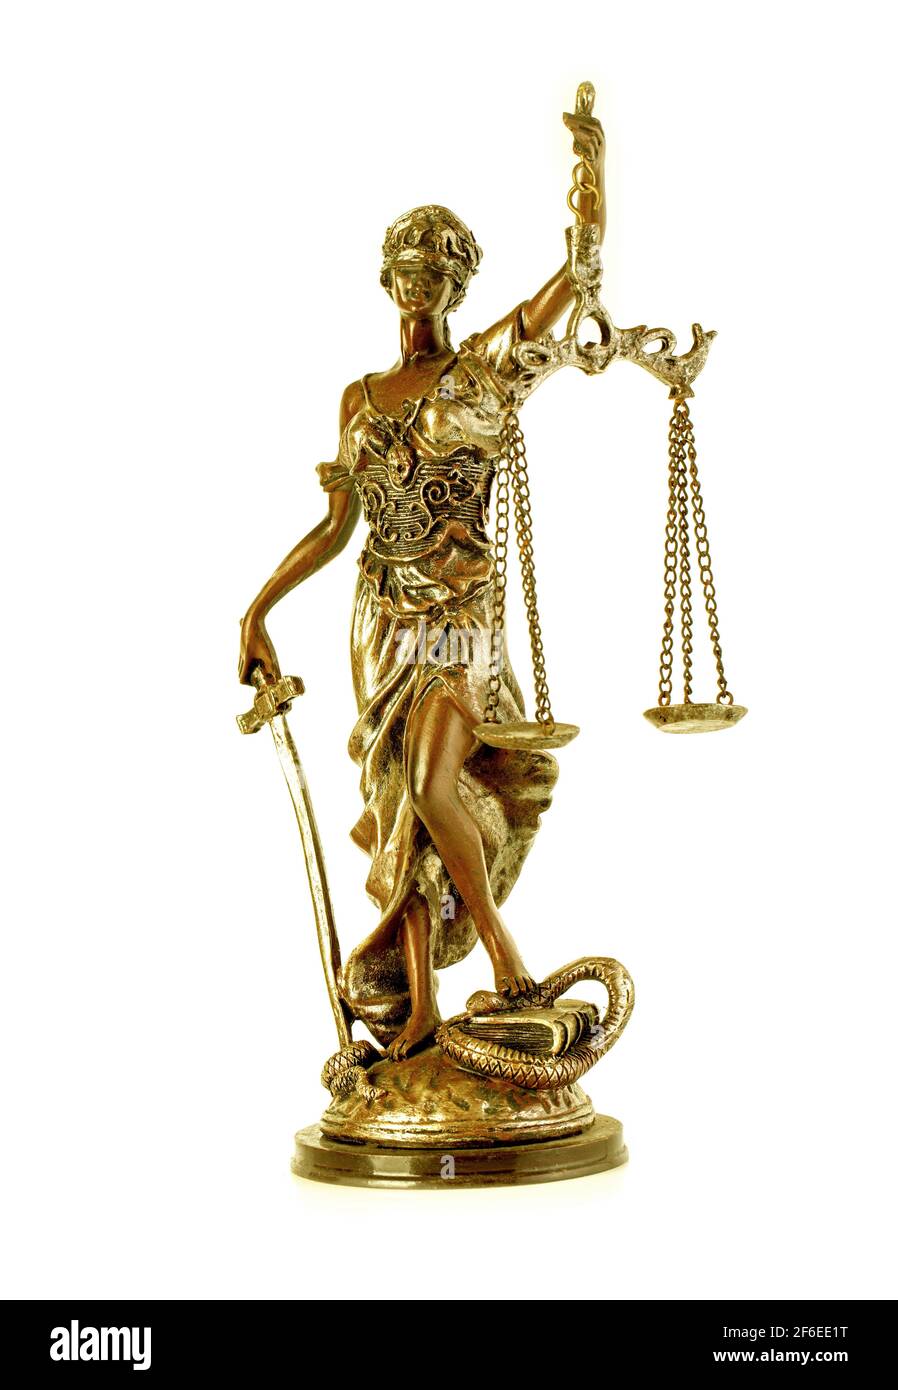 Die goldene Statue der Gerechtigkeit - Lady Justice oder Iustitia / Justitia die römische Göttin der Gerechtigkeit Stockfoto